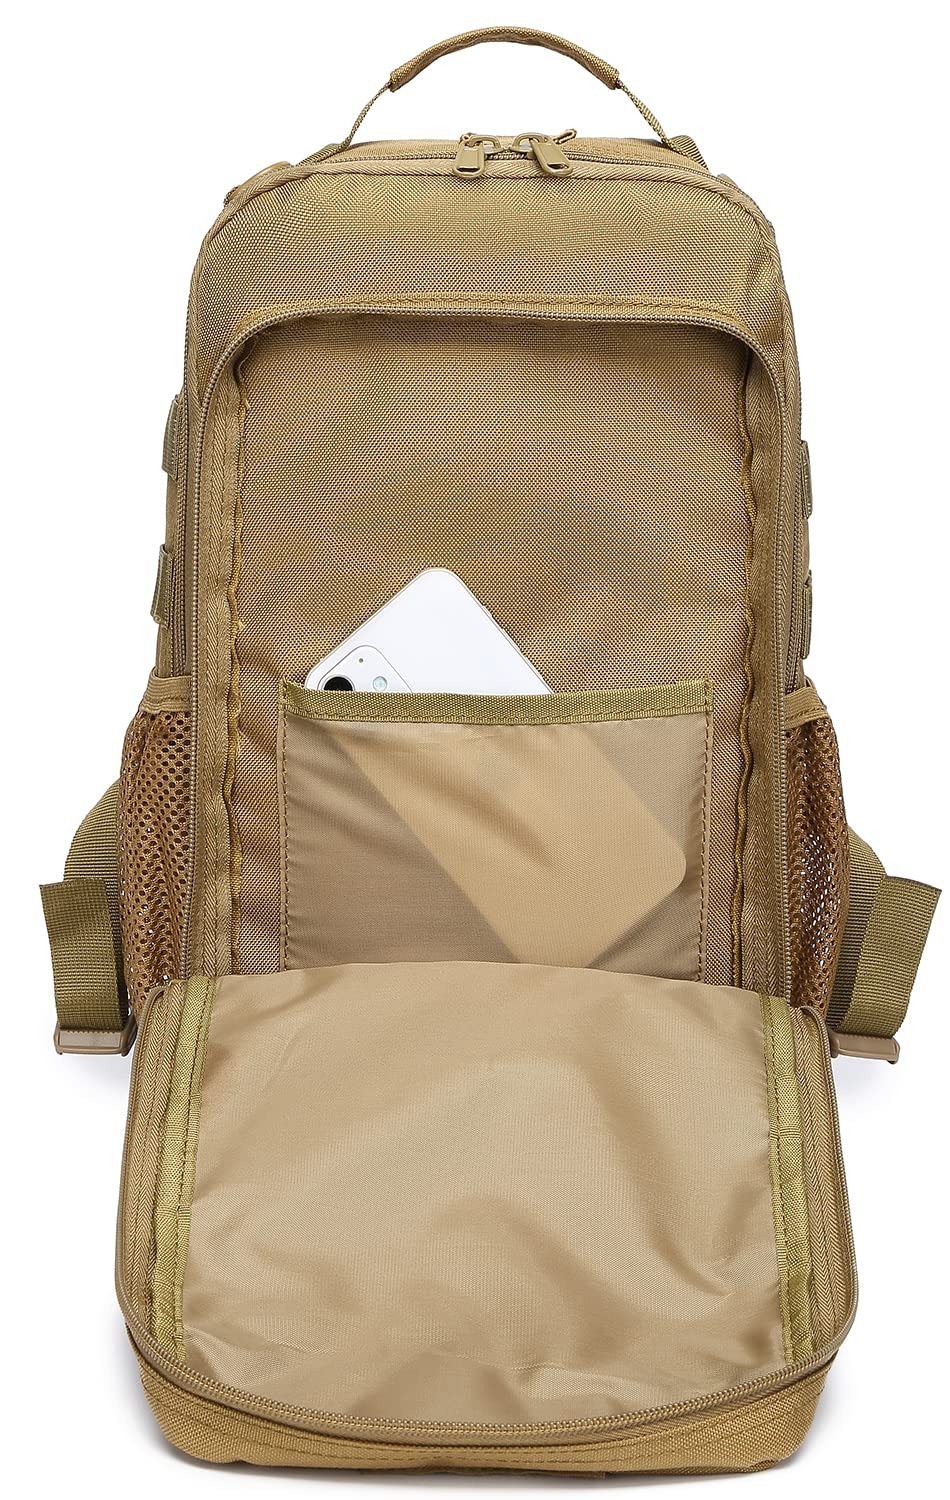 ATBP Tactical Shoulder Bag Backpack Large Sling Bag 20L Crossbody Bag Handgun Concealed Carry Chest Bag